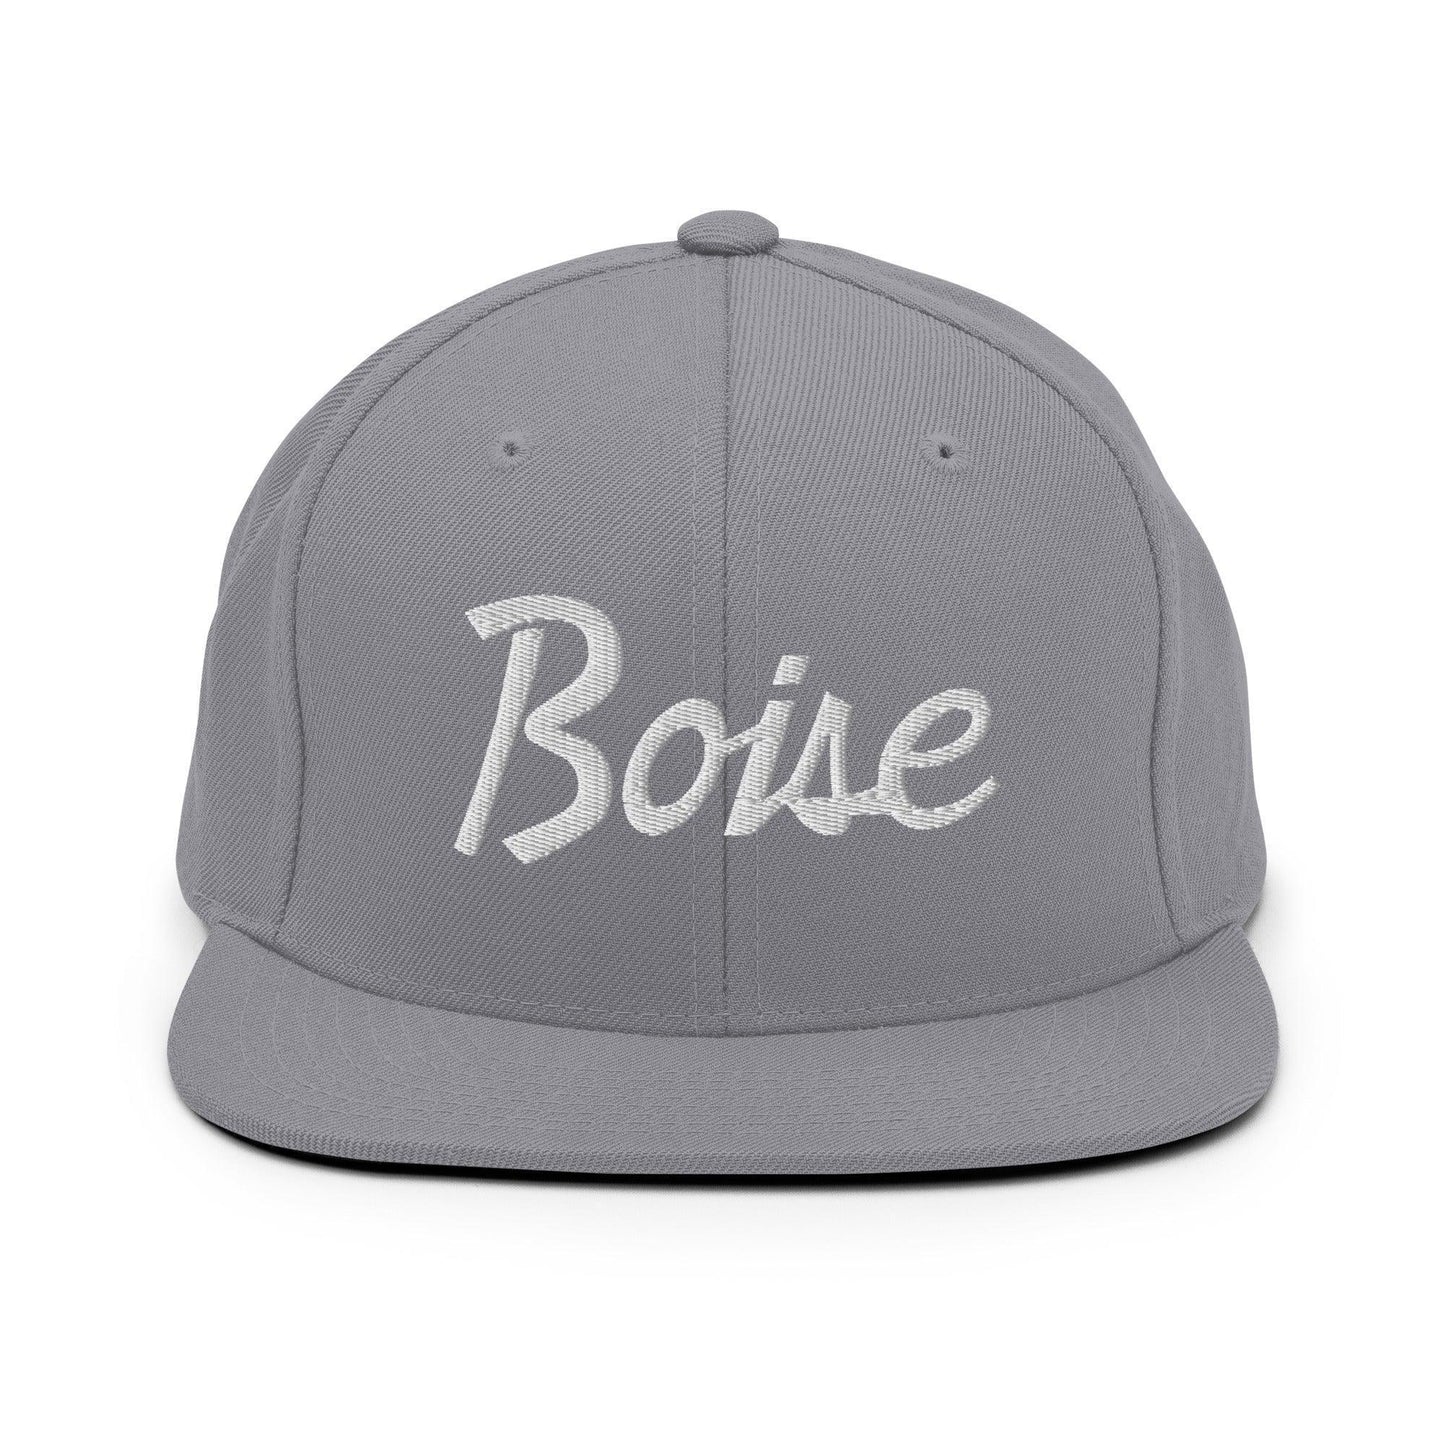 Boise Script Snapback Hat Silver